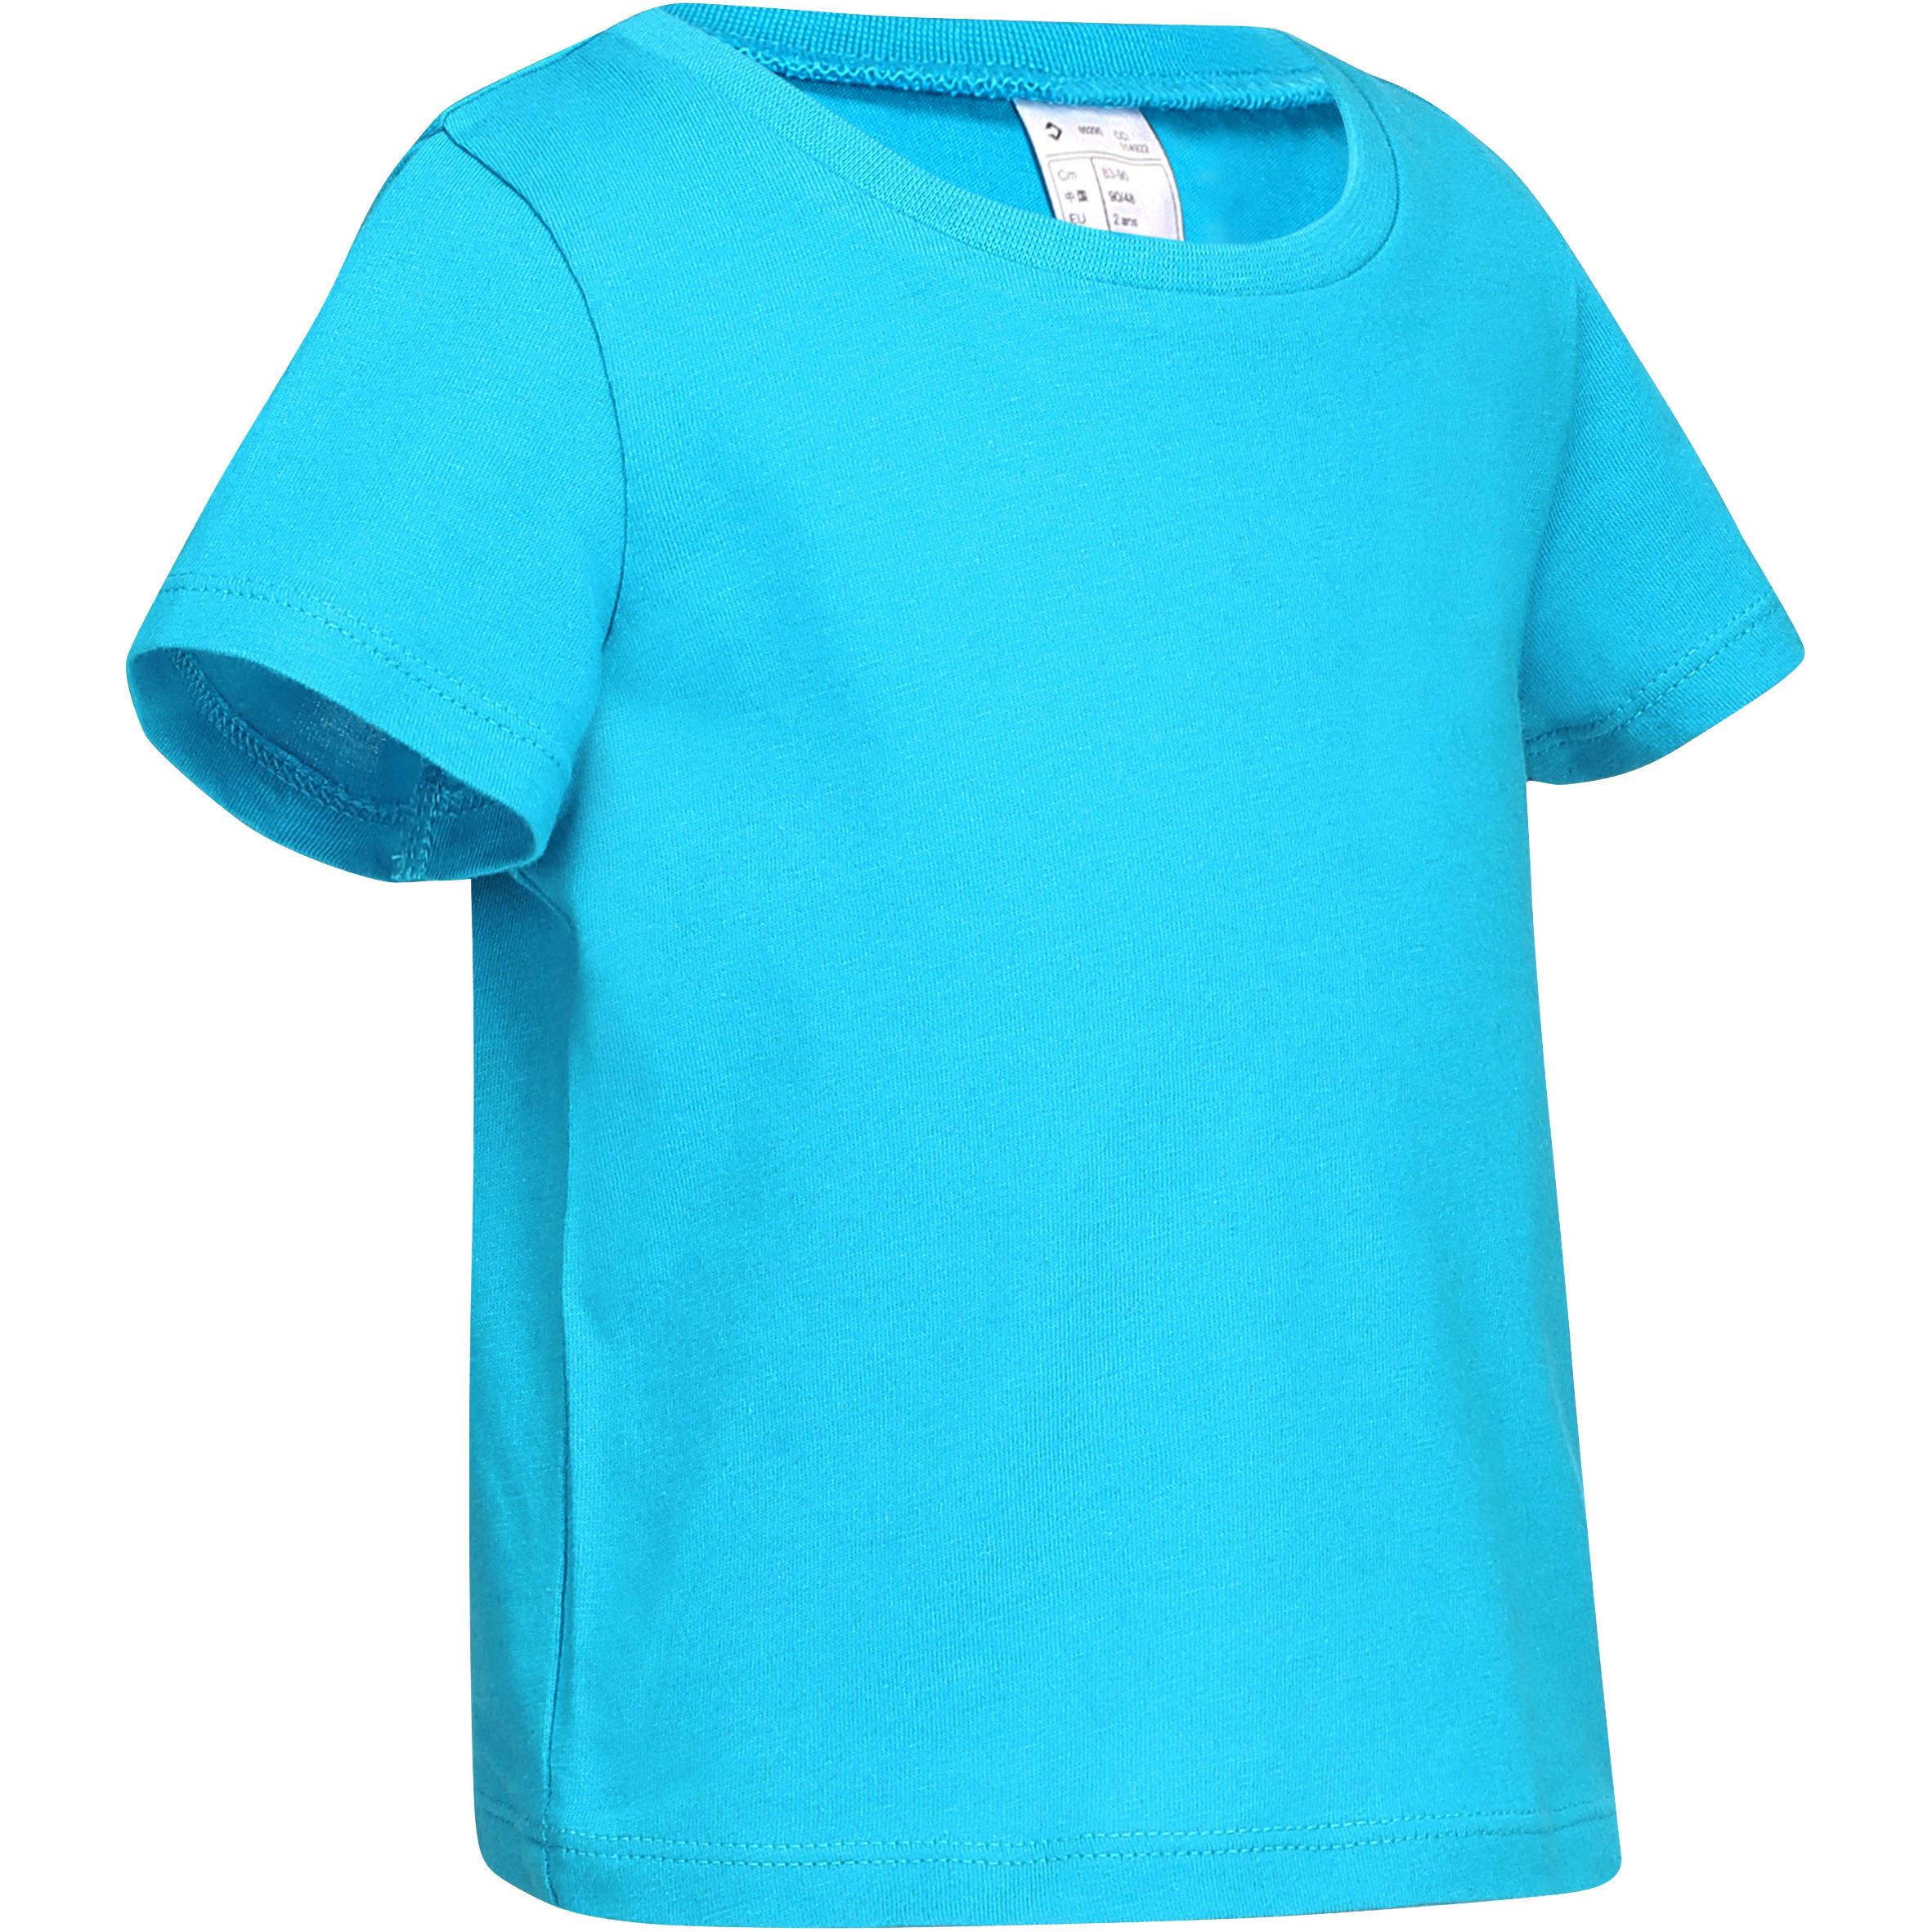 [ด่วน!! โปรโมชั่นมีจำนวนจำกัด] เสื้อยืดแขนสั้นกายบริหารทั่วไปสำหรับเด็กเล็กรุ่น 100 (สีฟ้า) สำหรับ เต้นรำ ยิมนาสติก  ฟิตเนส  โยคะ ยิมนาสติกพิลาทิส ยิมนาสติกเด็ก